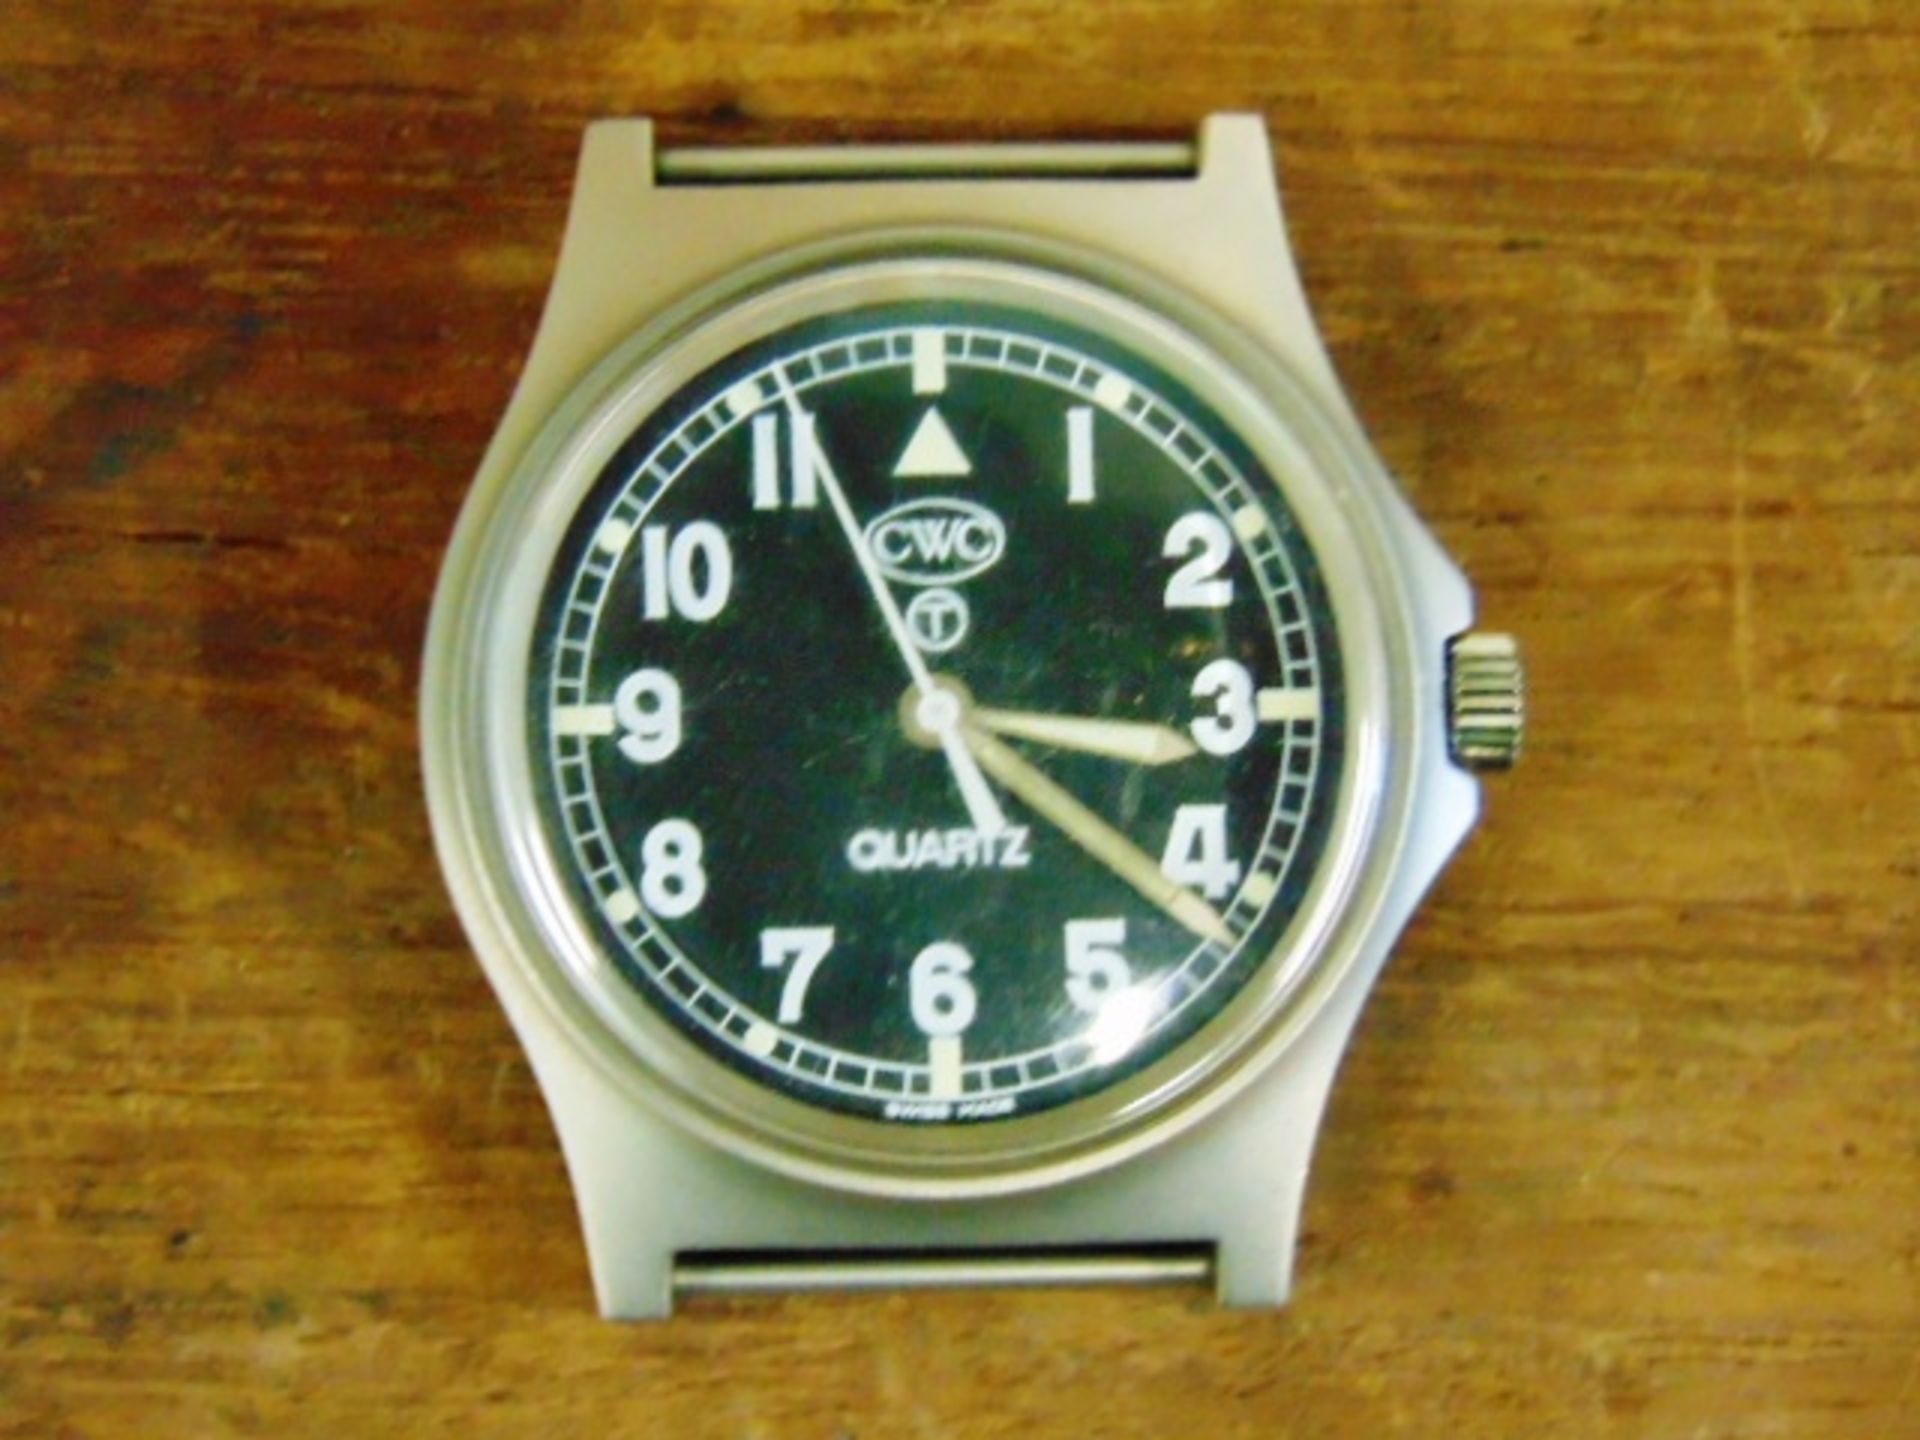 Unissued Genuine British Army, Waterproof CWC quartz wrist watch - Image 5 of 6